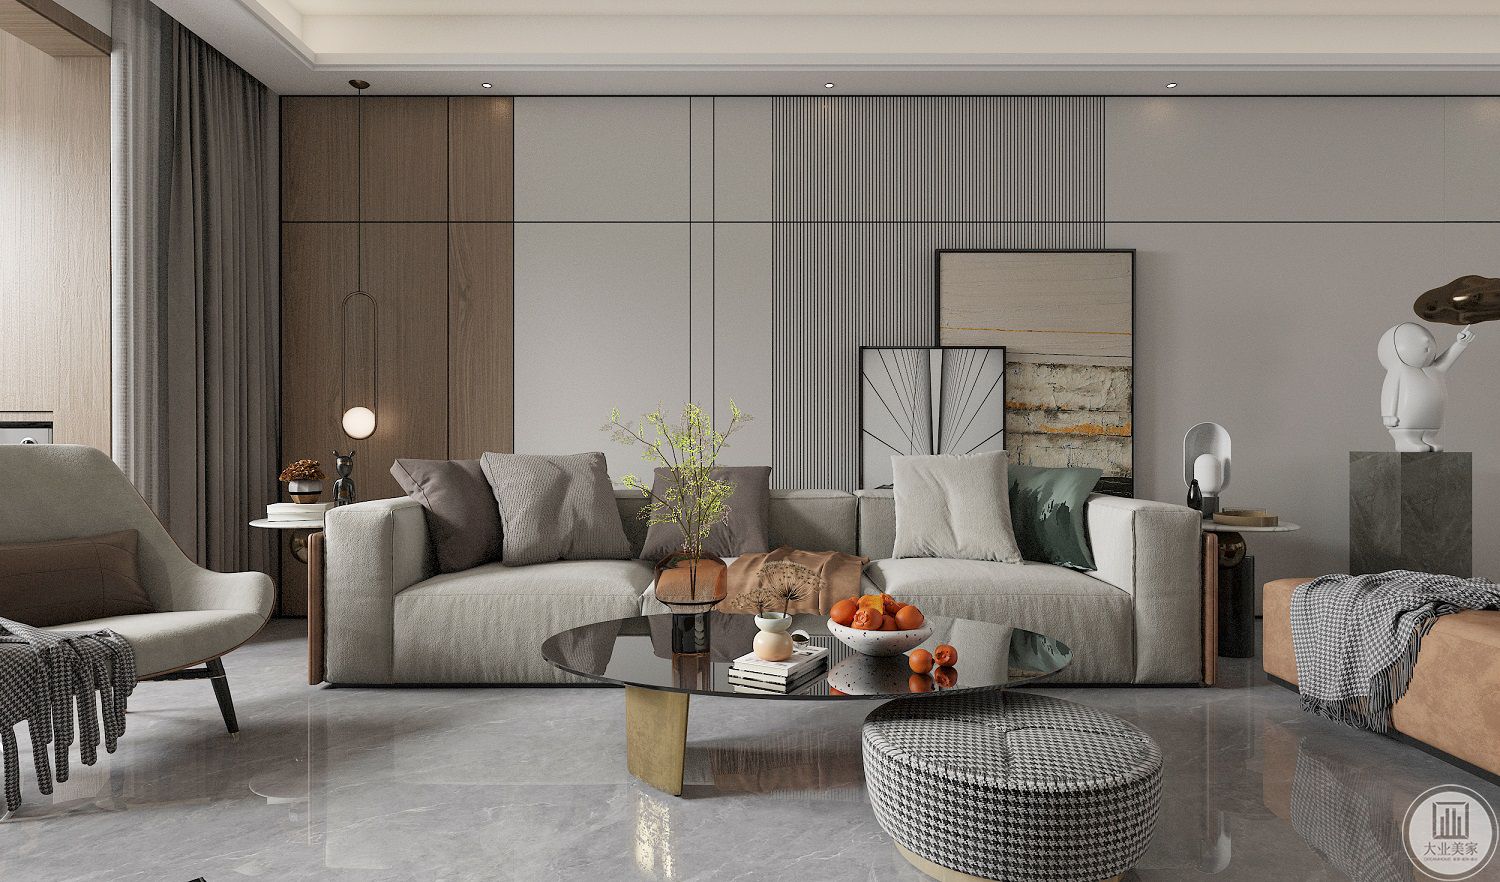 木质与灰色的护墙，让自然质朴的气息充斥空间的每一个角落。在序列般的空间布局里，沙发与脚踏呈半围合状态，带来极度舒适与亲近之感。